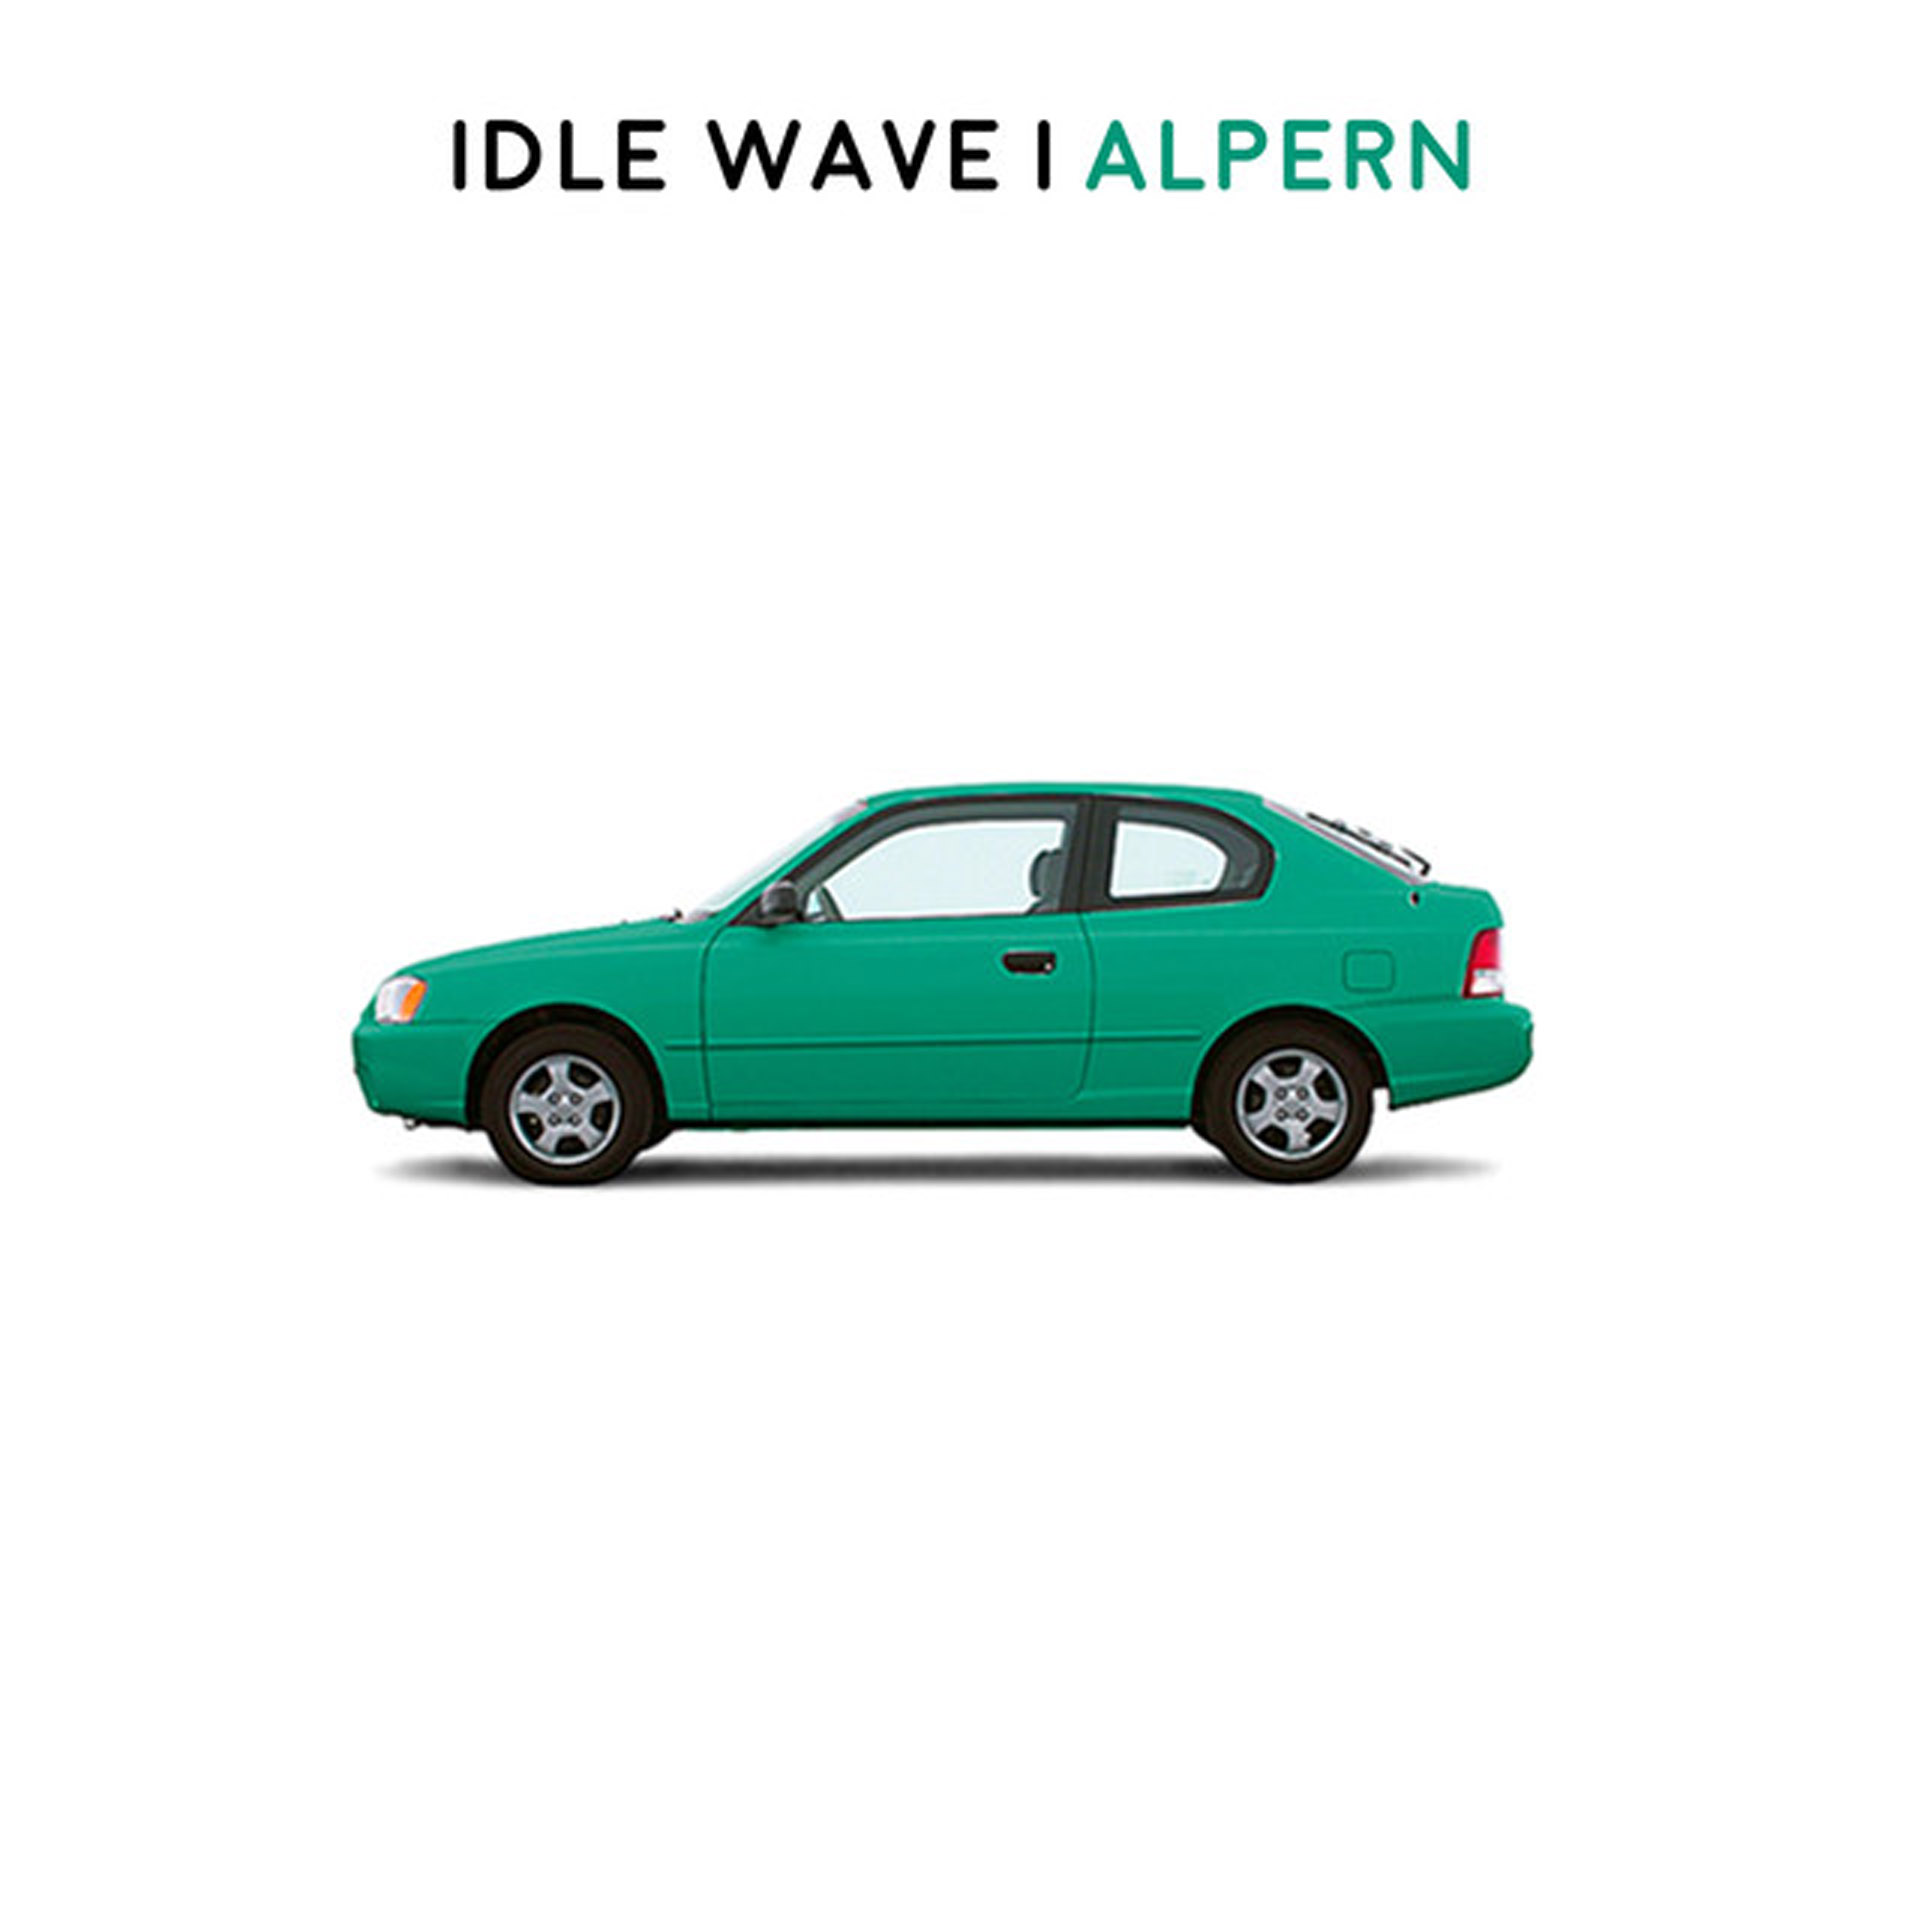 Idle Wave Alpern cover.jpeg